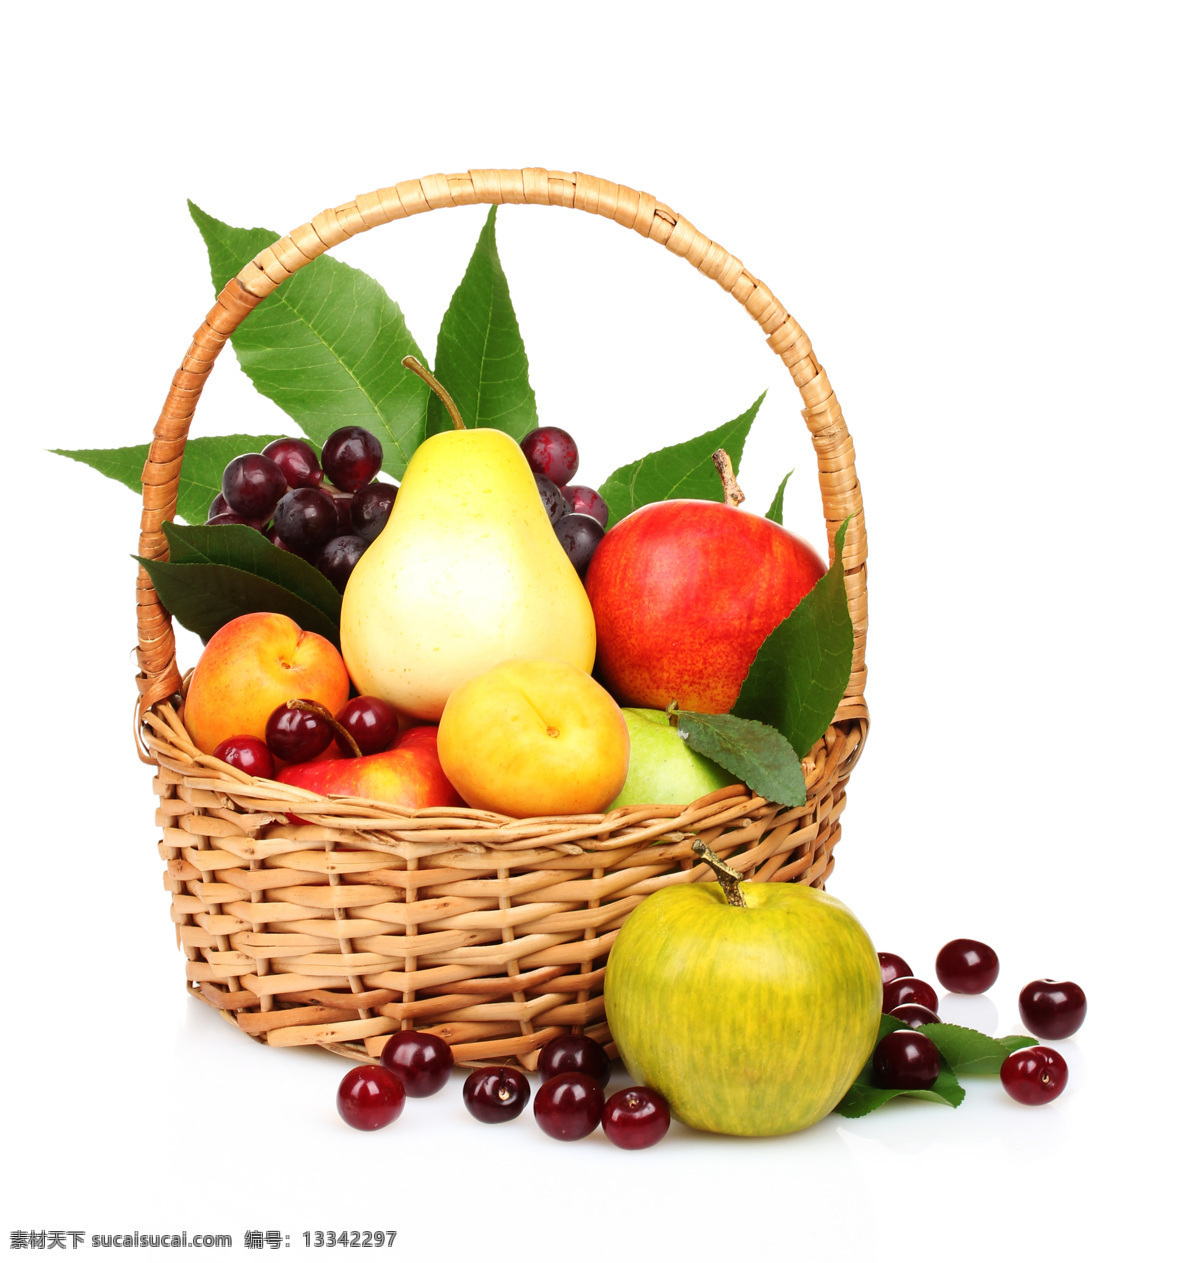 水果篮子 水果 新鲜水果 摄影图 篮子 樱桃 苹果 梨子 梅子 杏子 水果蔬菜 餐饮美食 白色